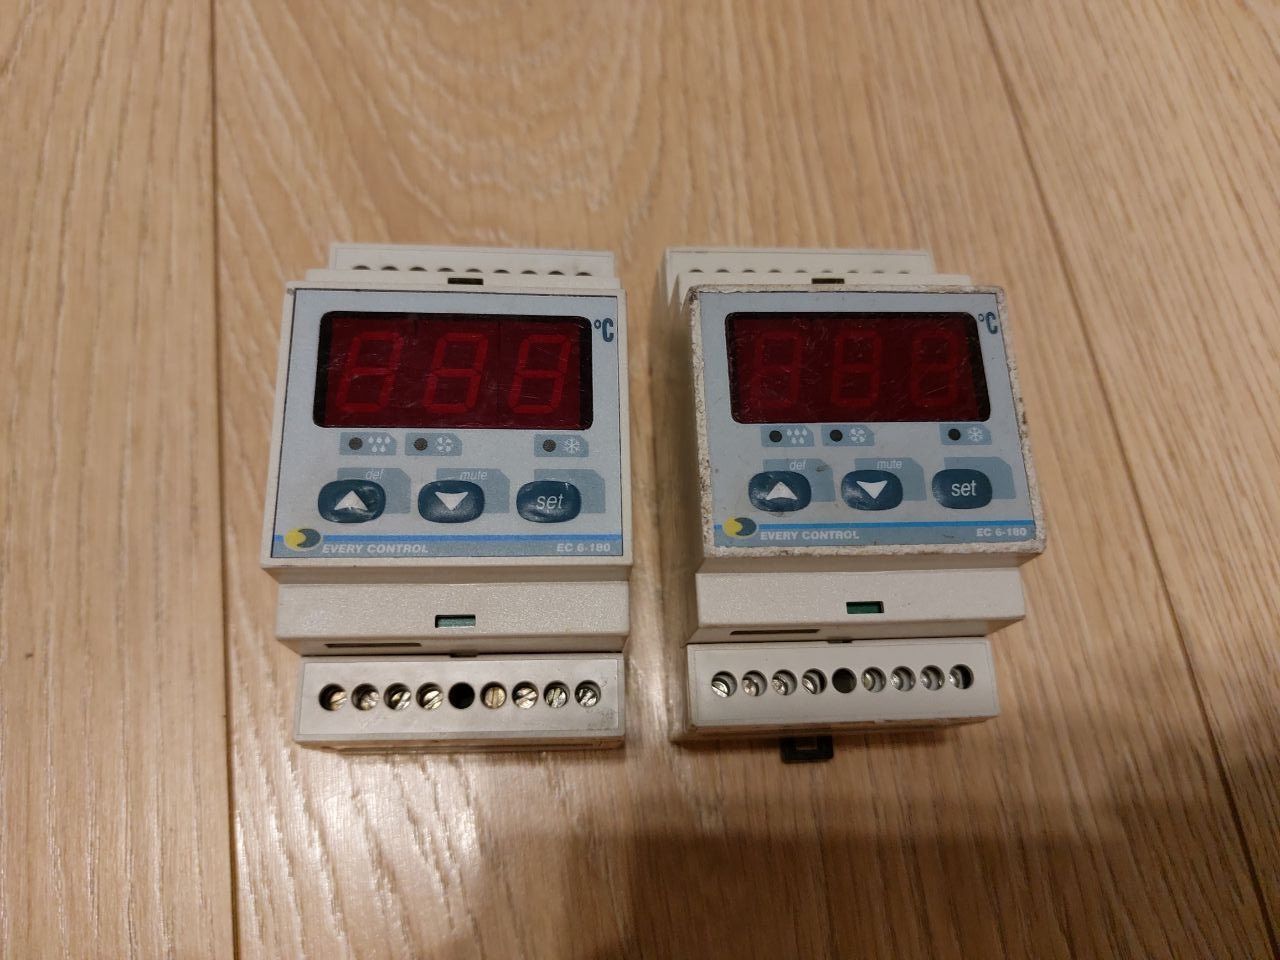 Электронный блок управления по температуре Evco EC6-180